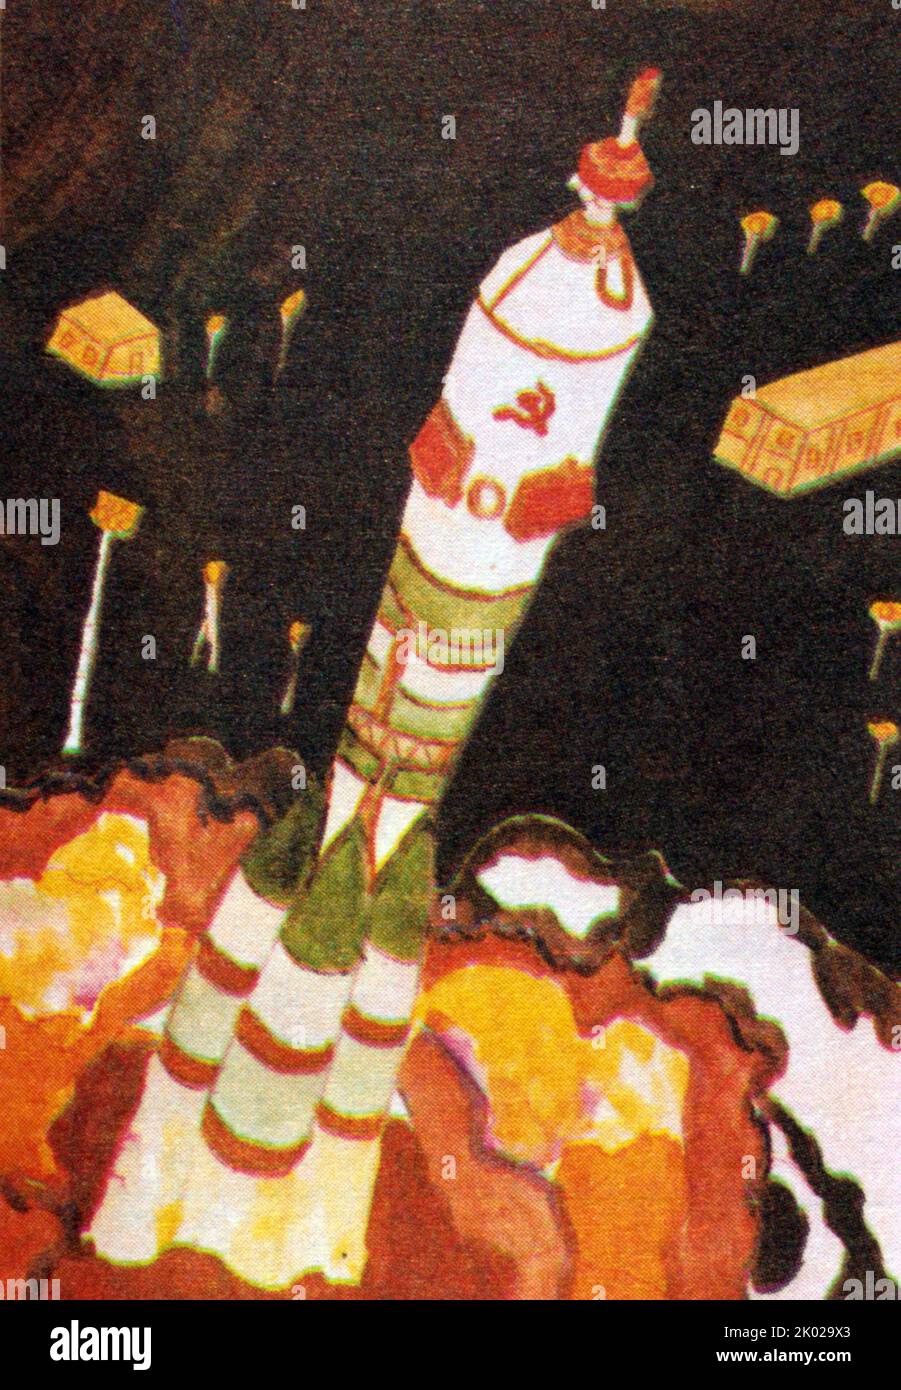 Im Weltraum. Von Lena. Russisches Kindergemälde, das das sowjetische Raumfahrtprogramm 1980 illustriert Stockfoto